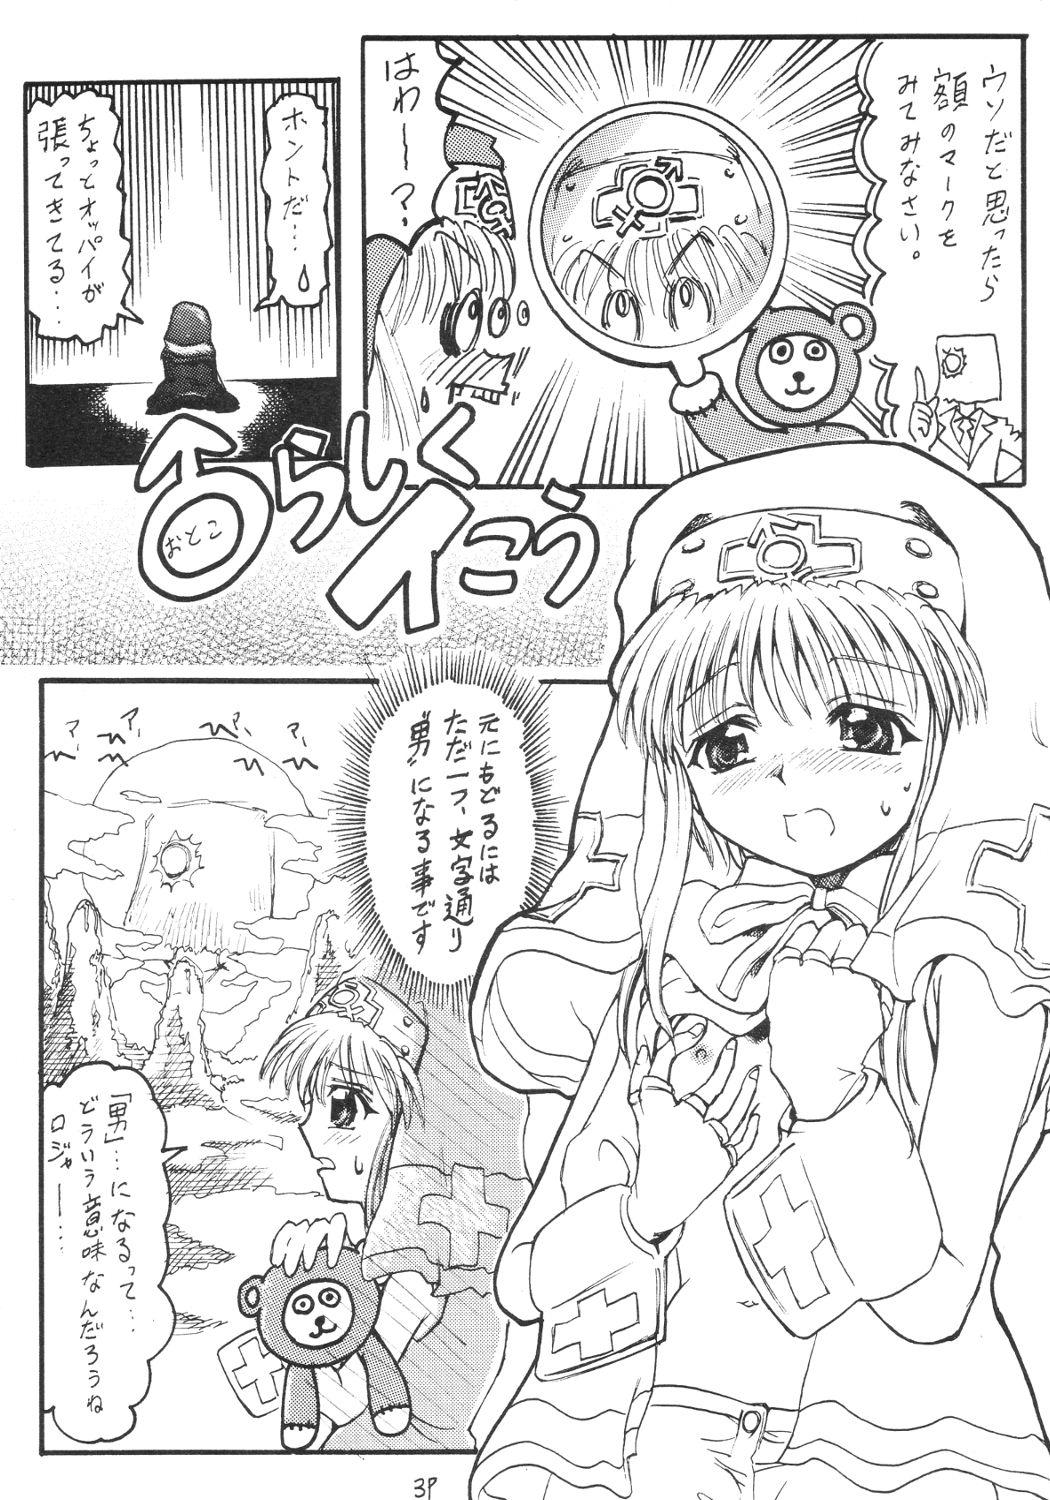 Long Hair Anime Imouto Ou 2 - Guilty gear Deutsche - Page 4